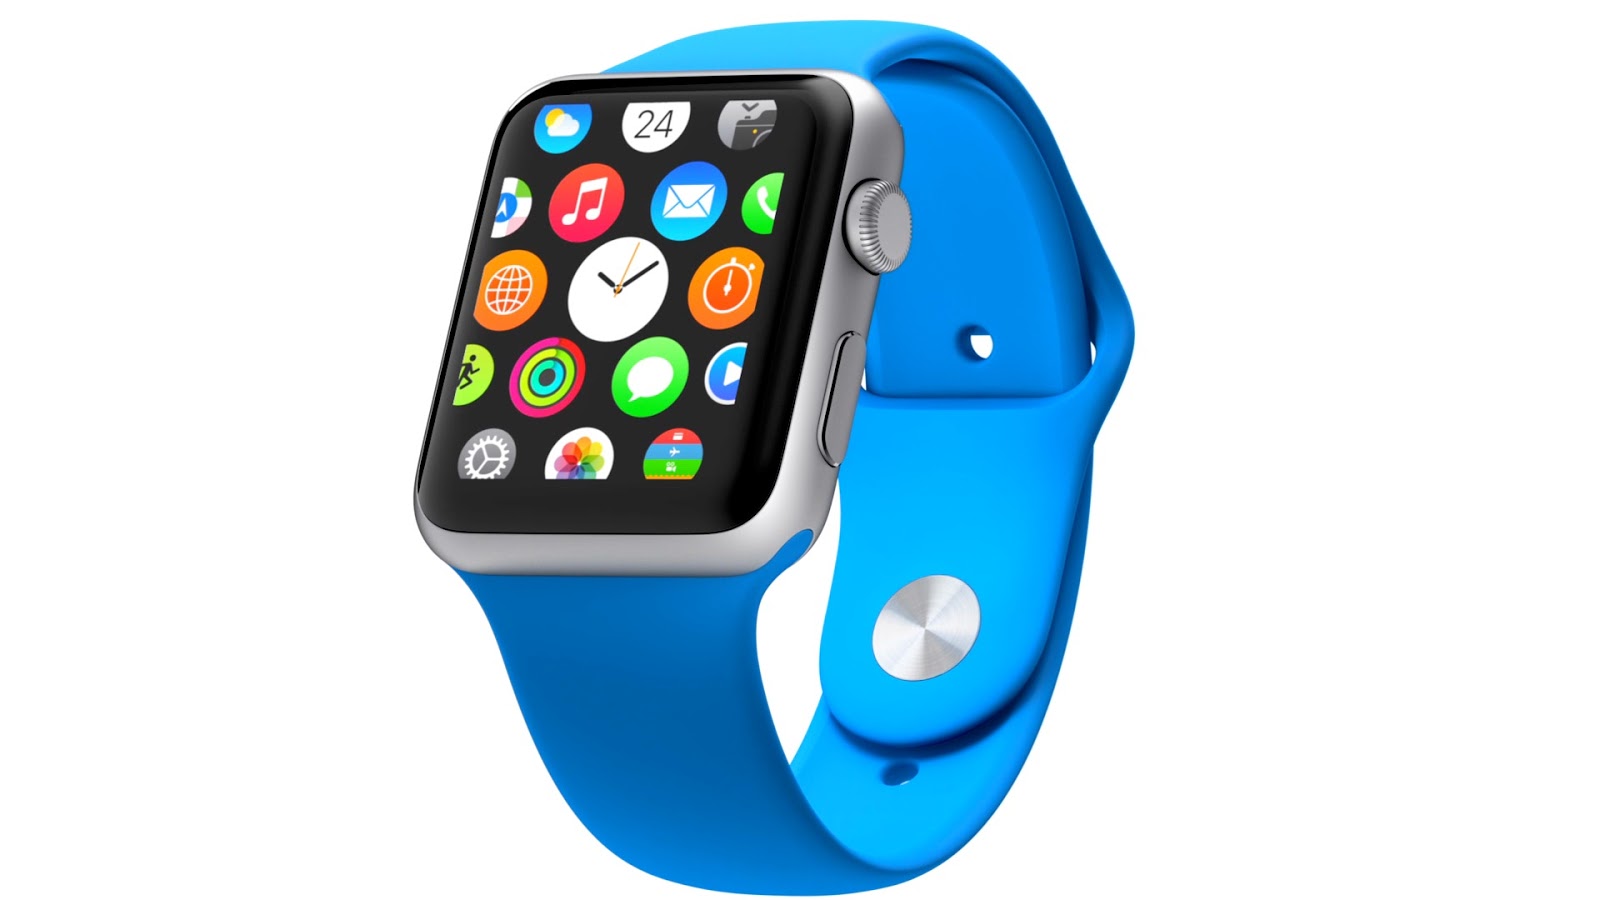 Apple Smart watch